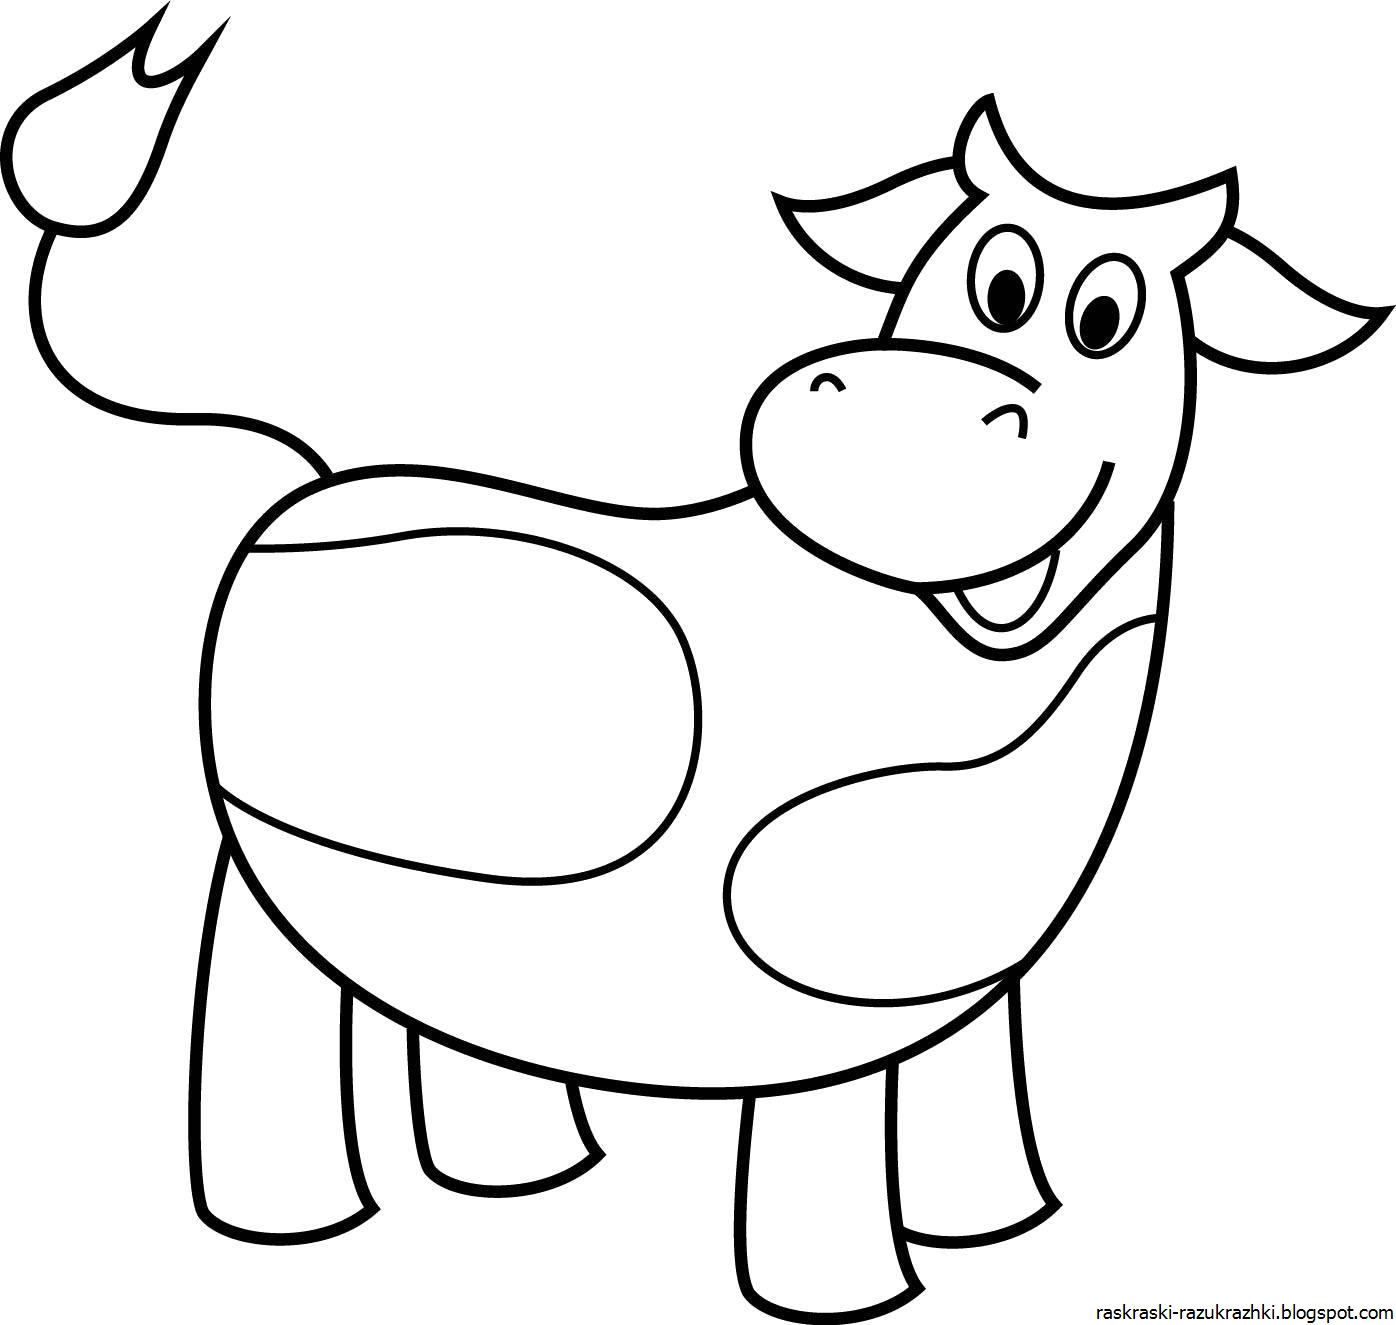 Раскраски для детей 3 года коровы. Раскраска корова. Корова раскраска для детей. Корова раскраска для малышей. Раскраски длы я малышей.